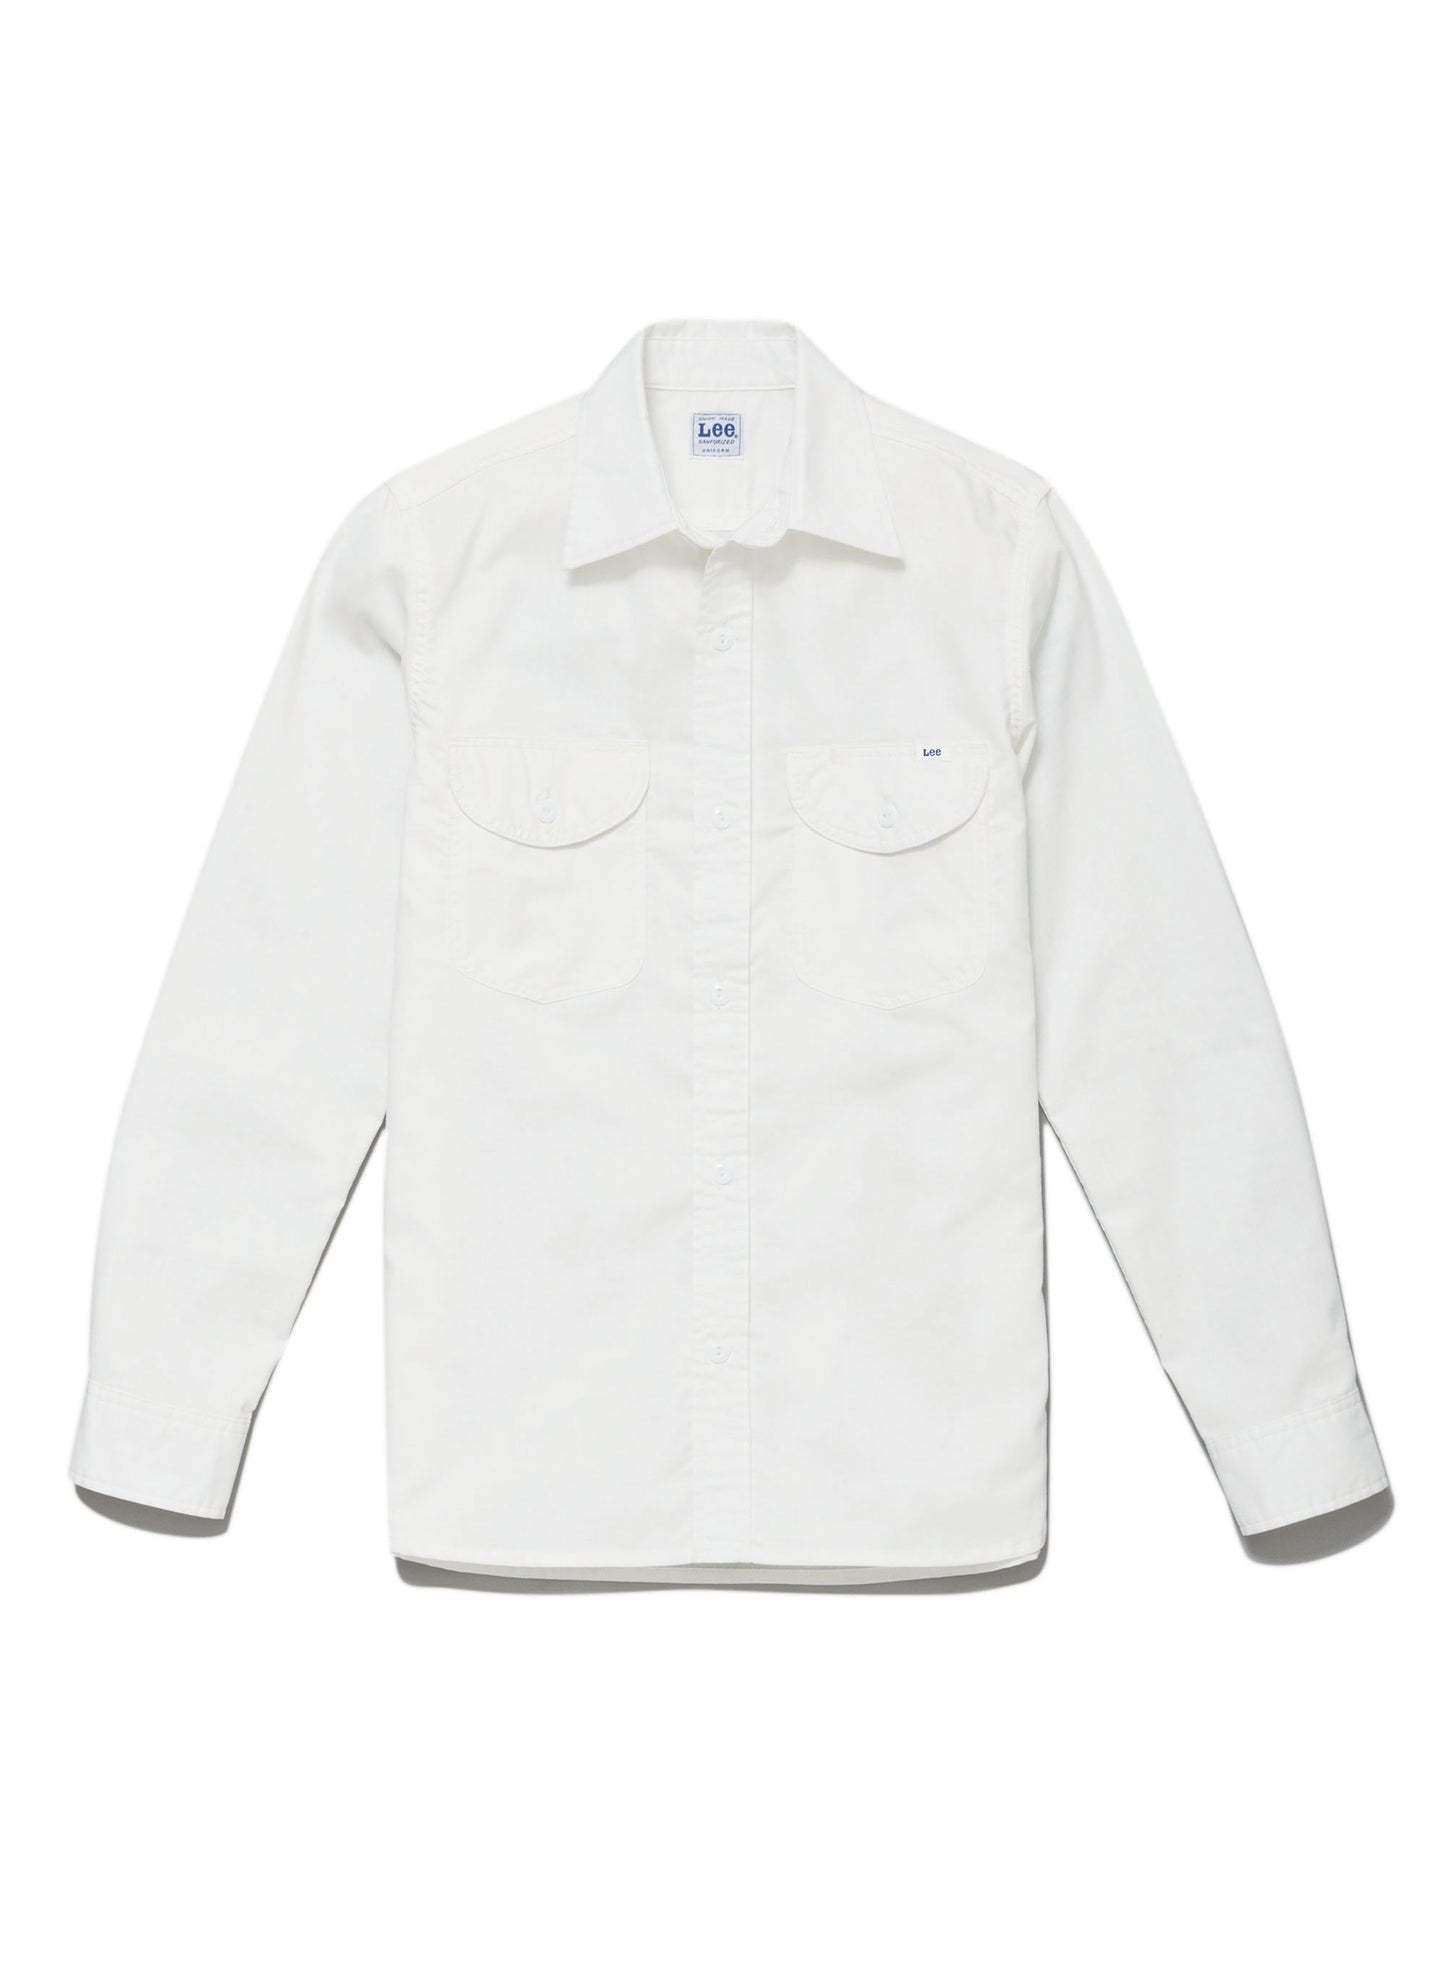 メンズシャンブレー長袖シャツ | カフェ・飲食店制服 | 1枚 | LCS46003 | ホワイト